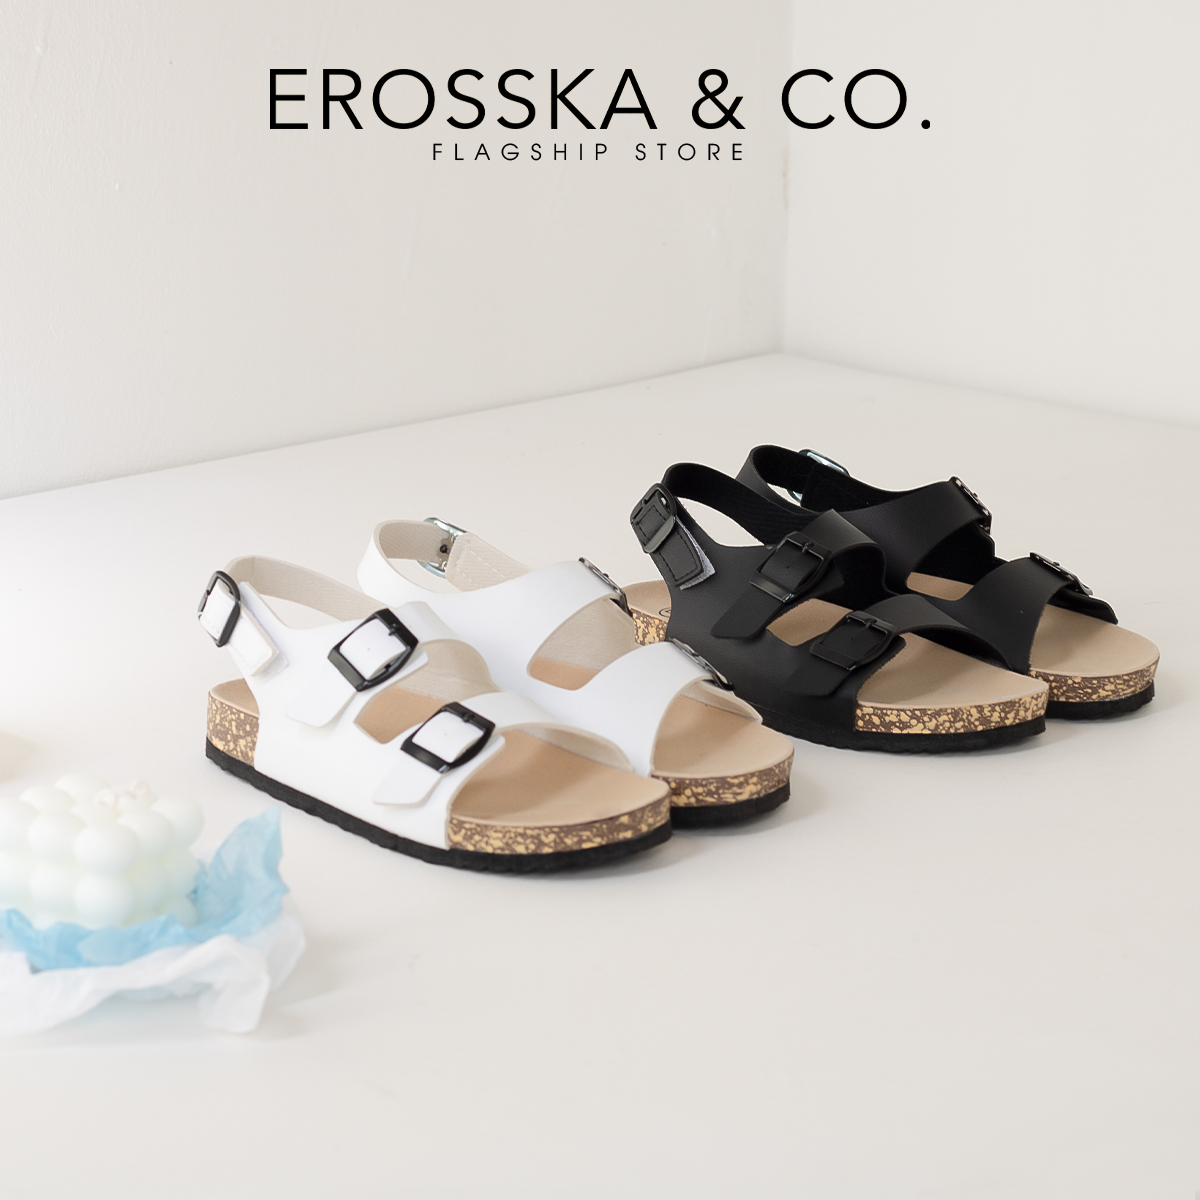 Sandal Birken đế trấu quai ngang phối khoá thời trang Erosska DT012